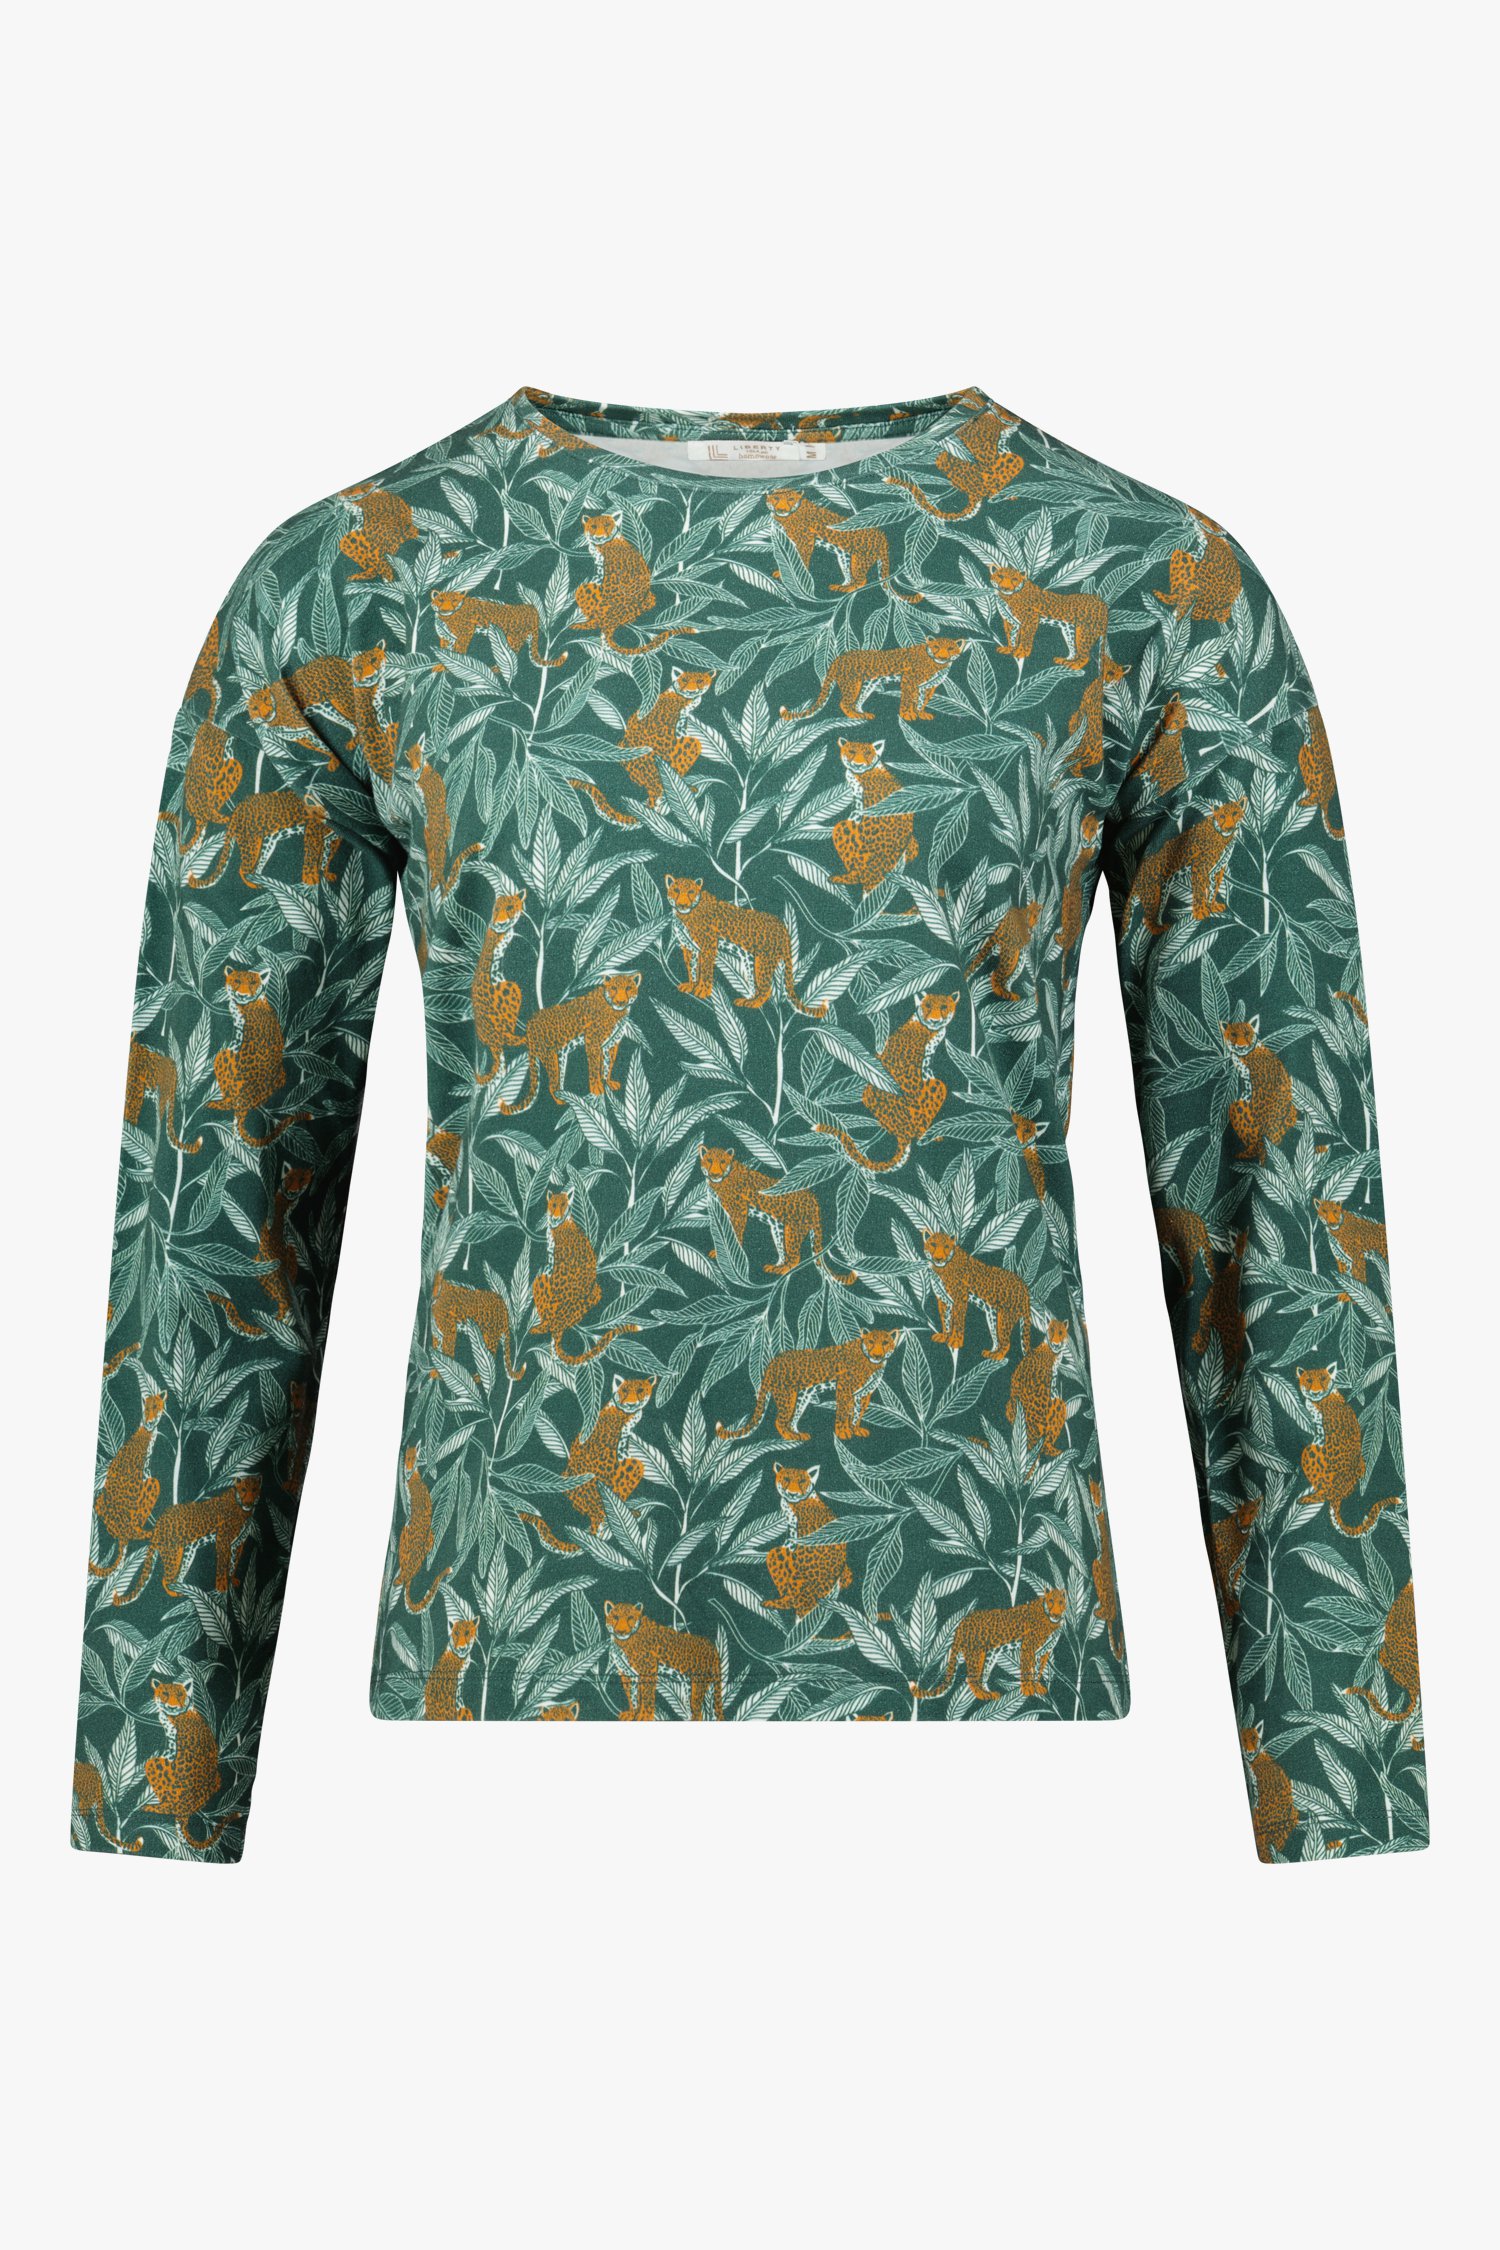 Groen T-shirt met panterprint van Liberty Island homewear voor Dames